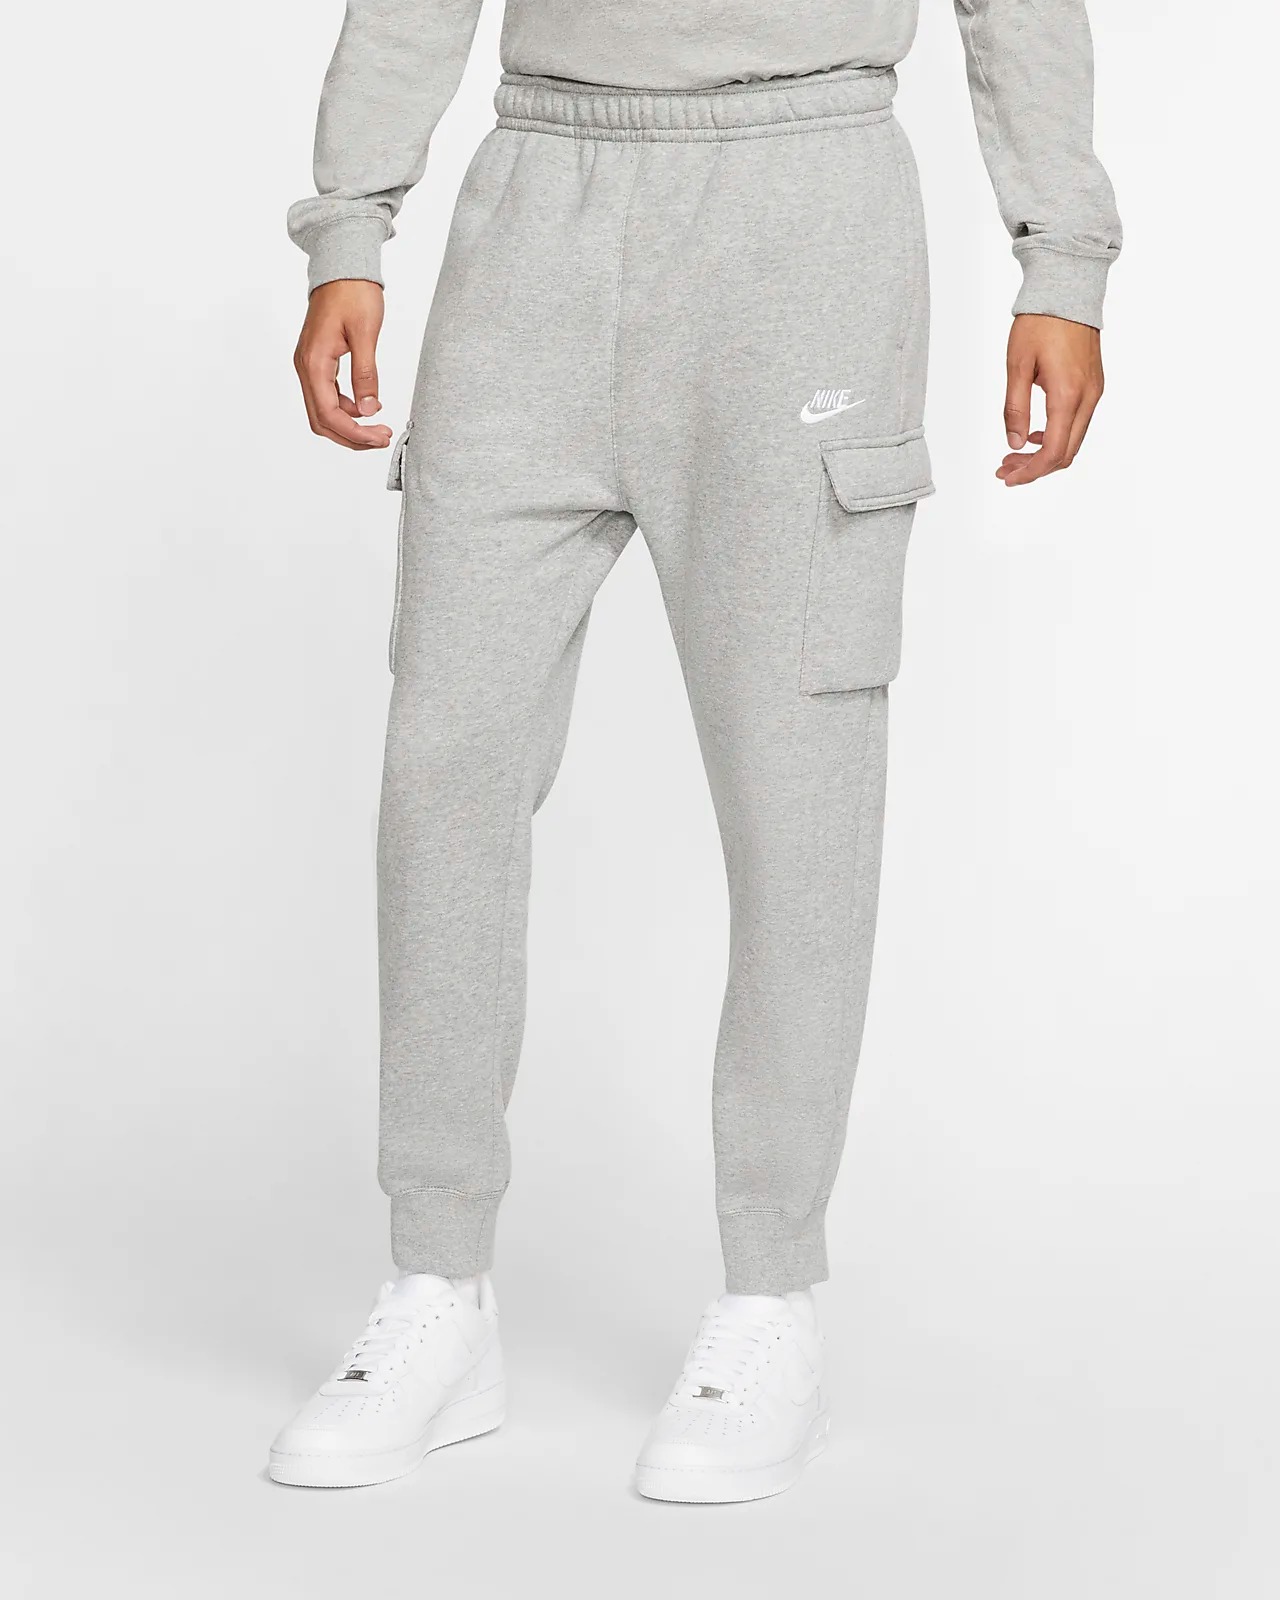 Спортивные брюки мужские Nike M Sportswear Club Fleece Cargo Pants серые M - купить в Москве, цены на Мегамаркет | 100051716925